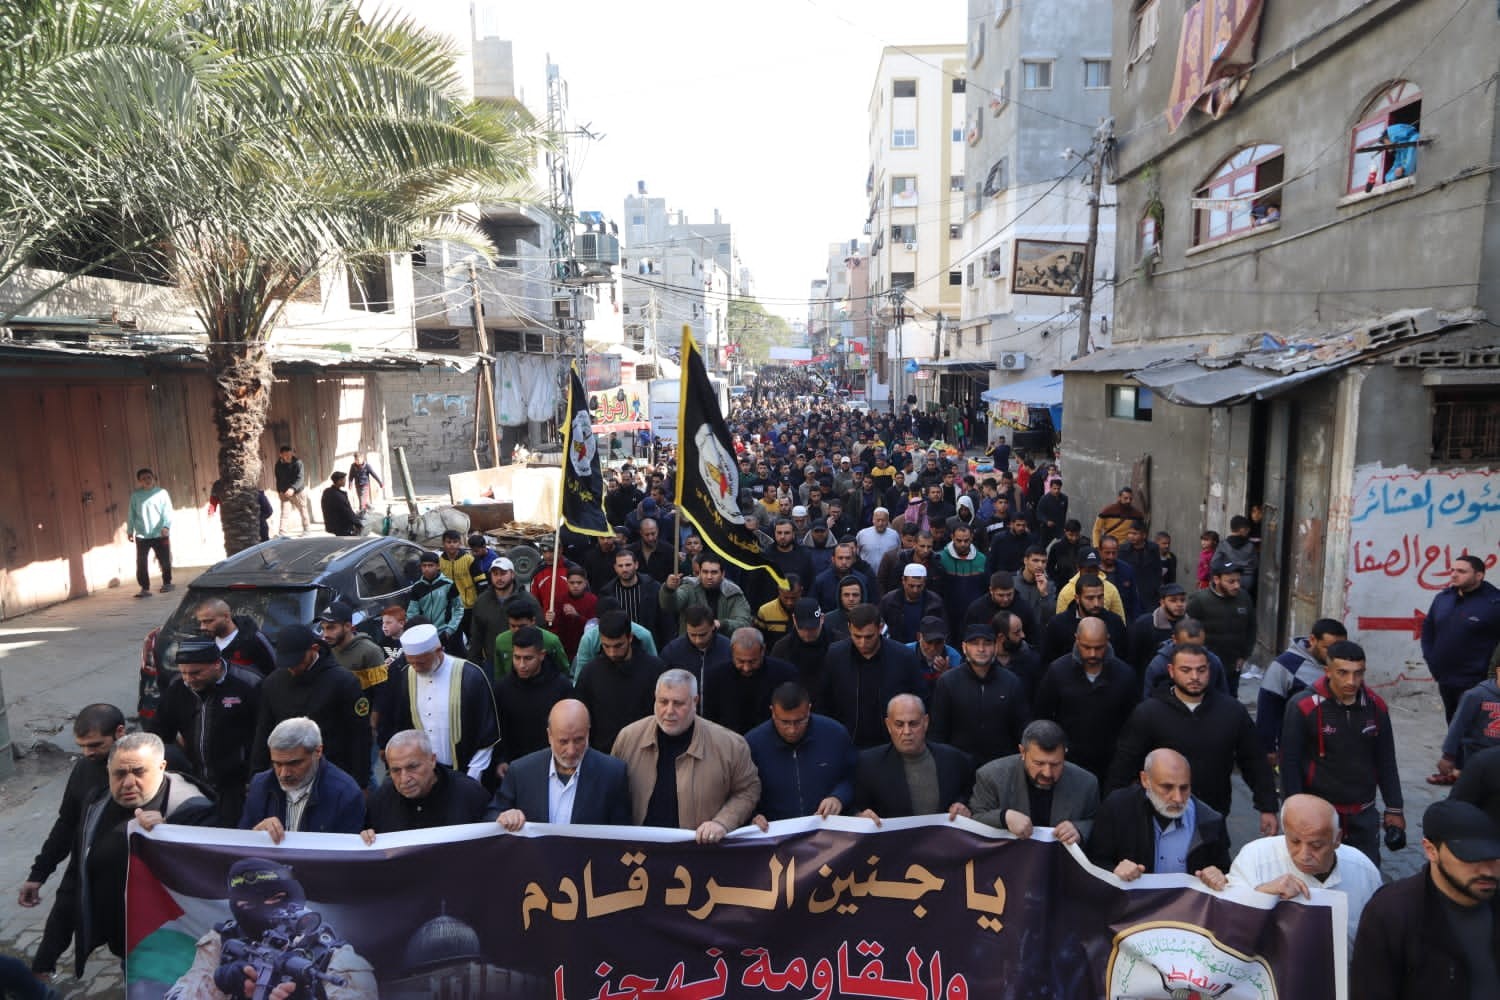 حركة الجهاد الإسلامي تنظم مسيرة شمال قطاع غزة.jpg